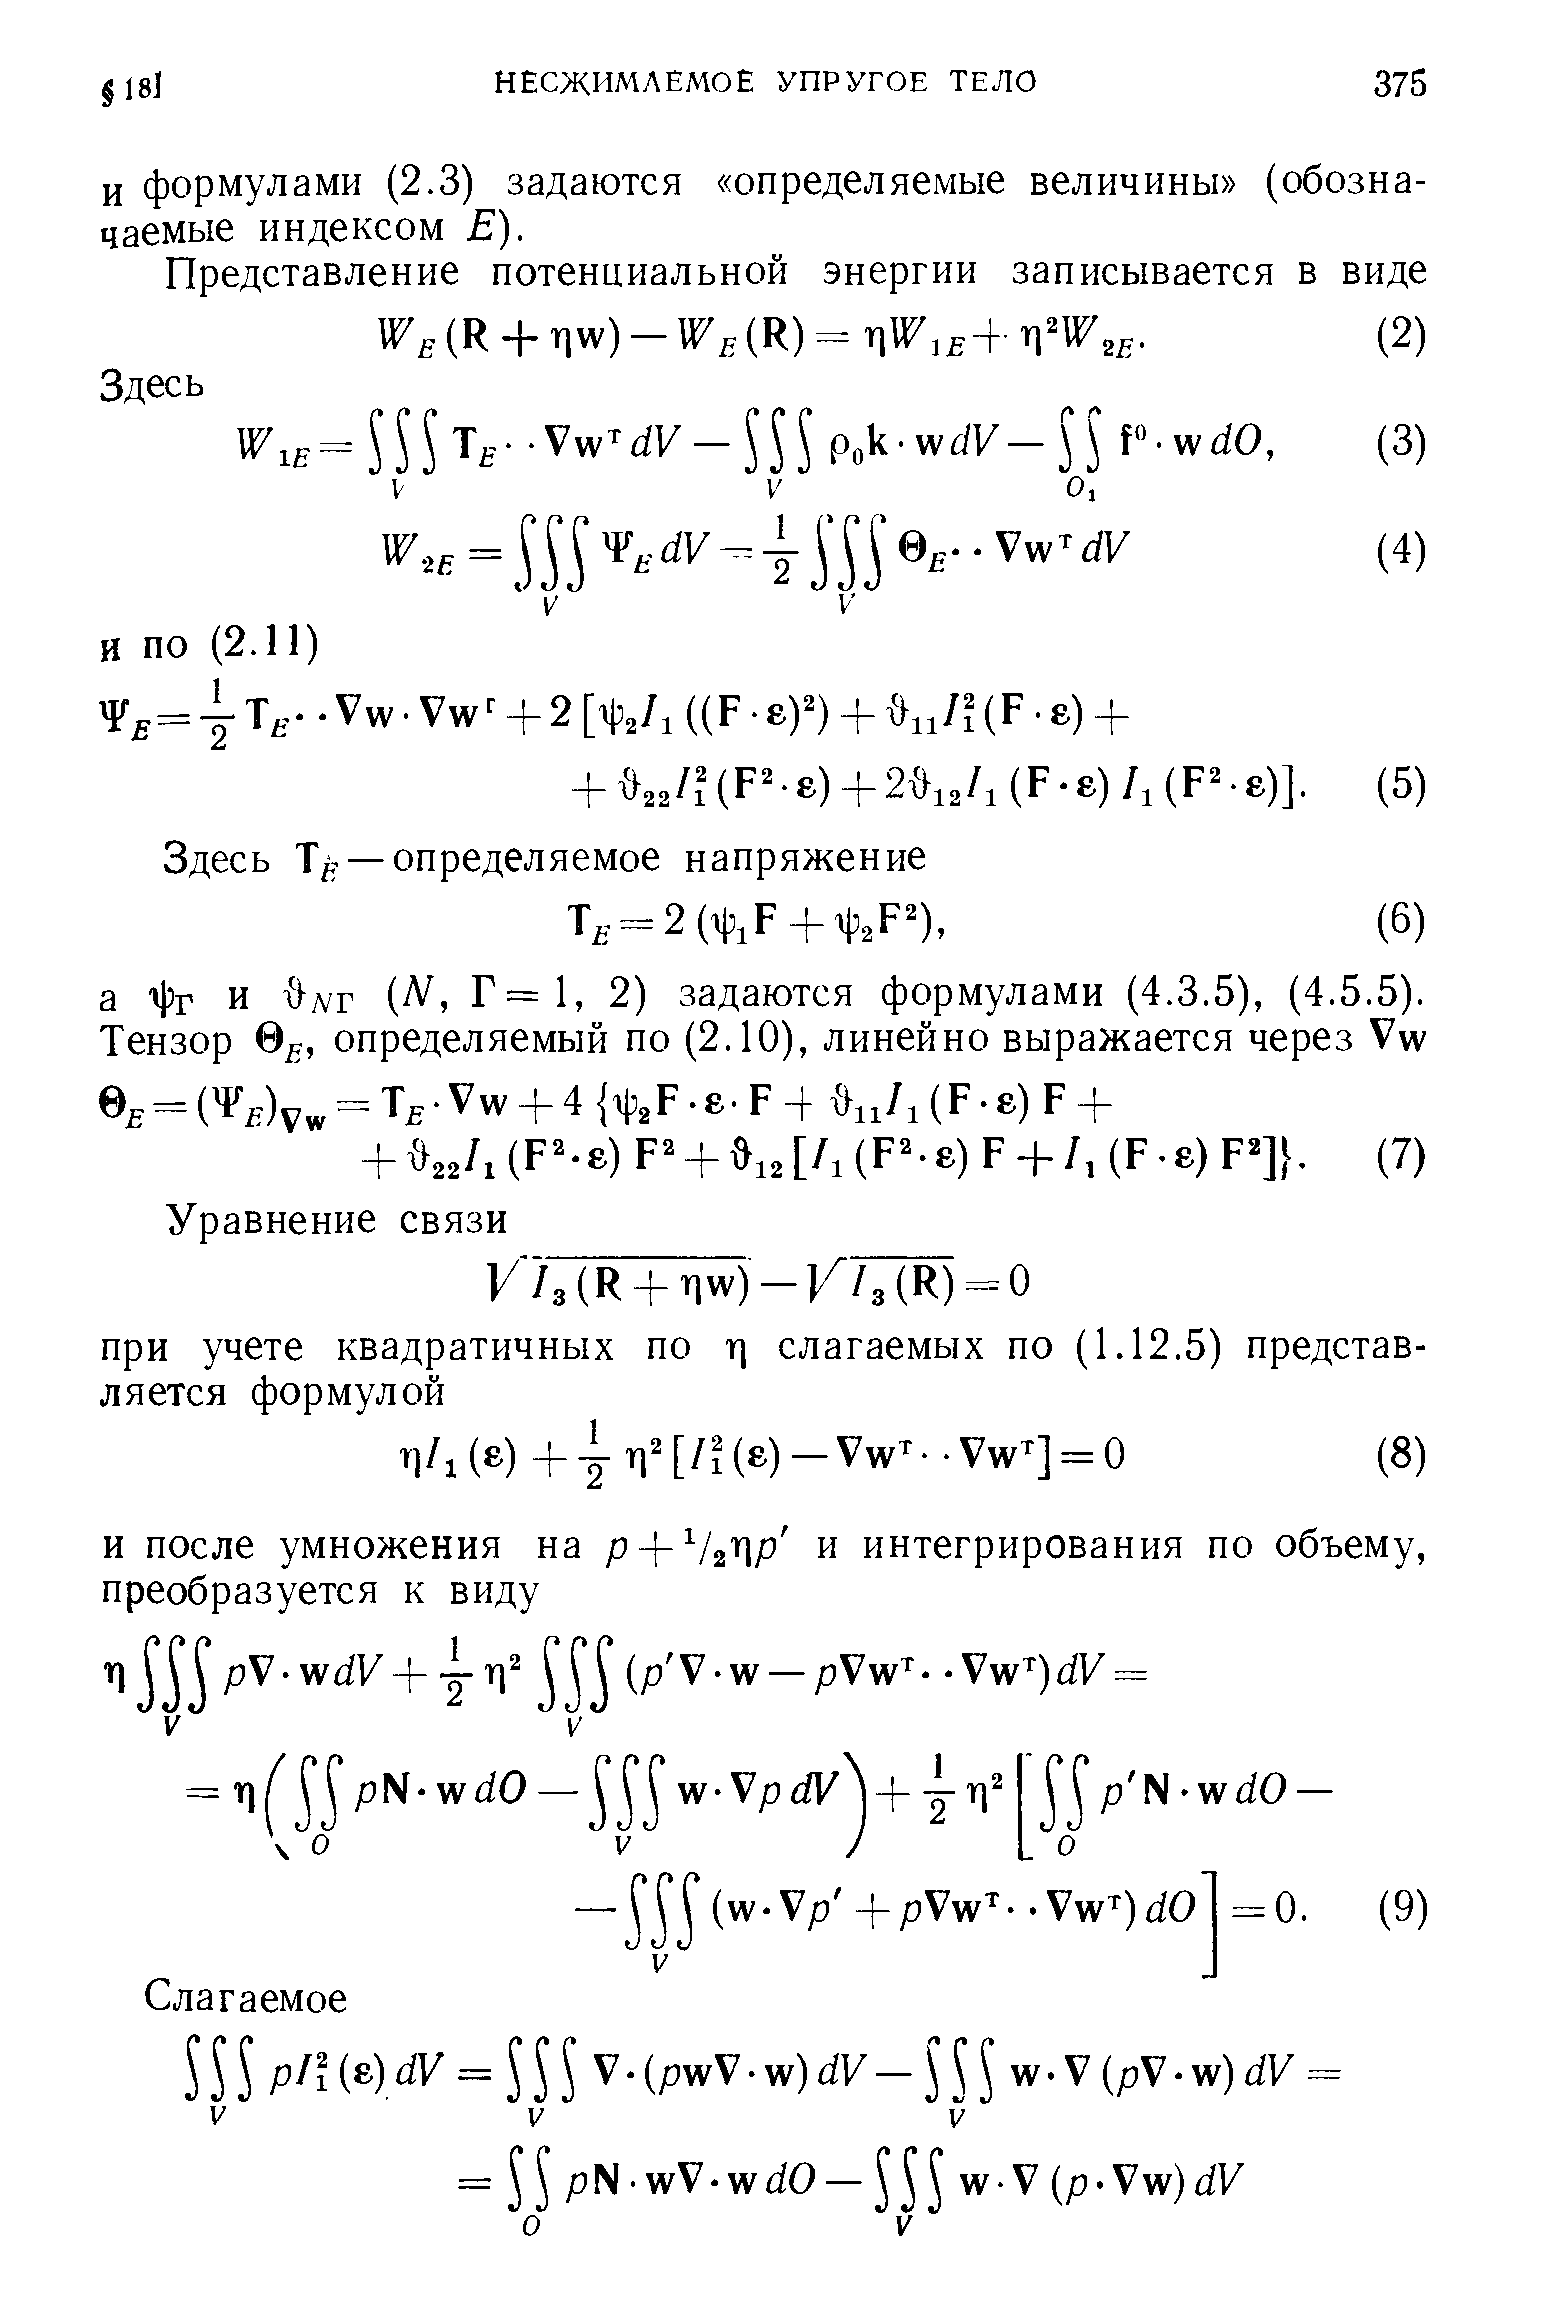 И формулами (2.3) задаются определяемые величины (обозначаемые индексом Е).
